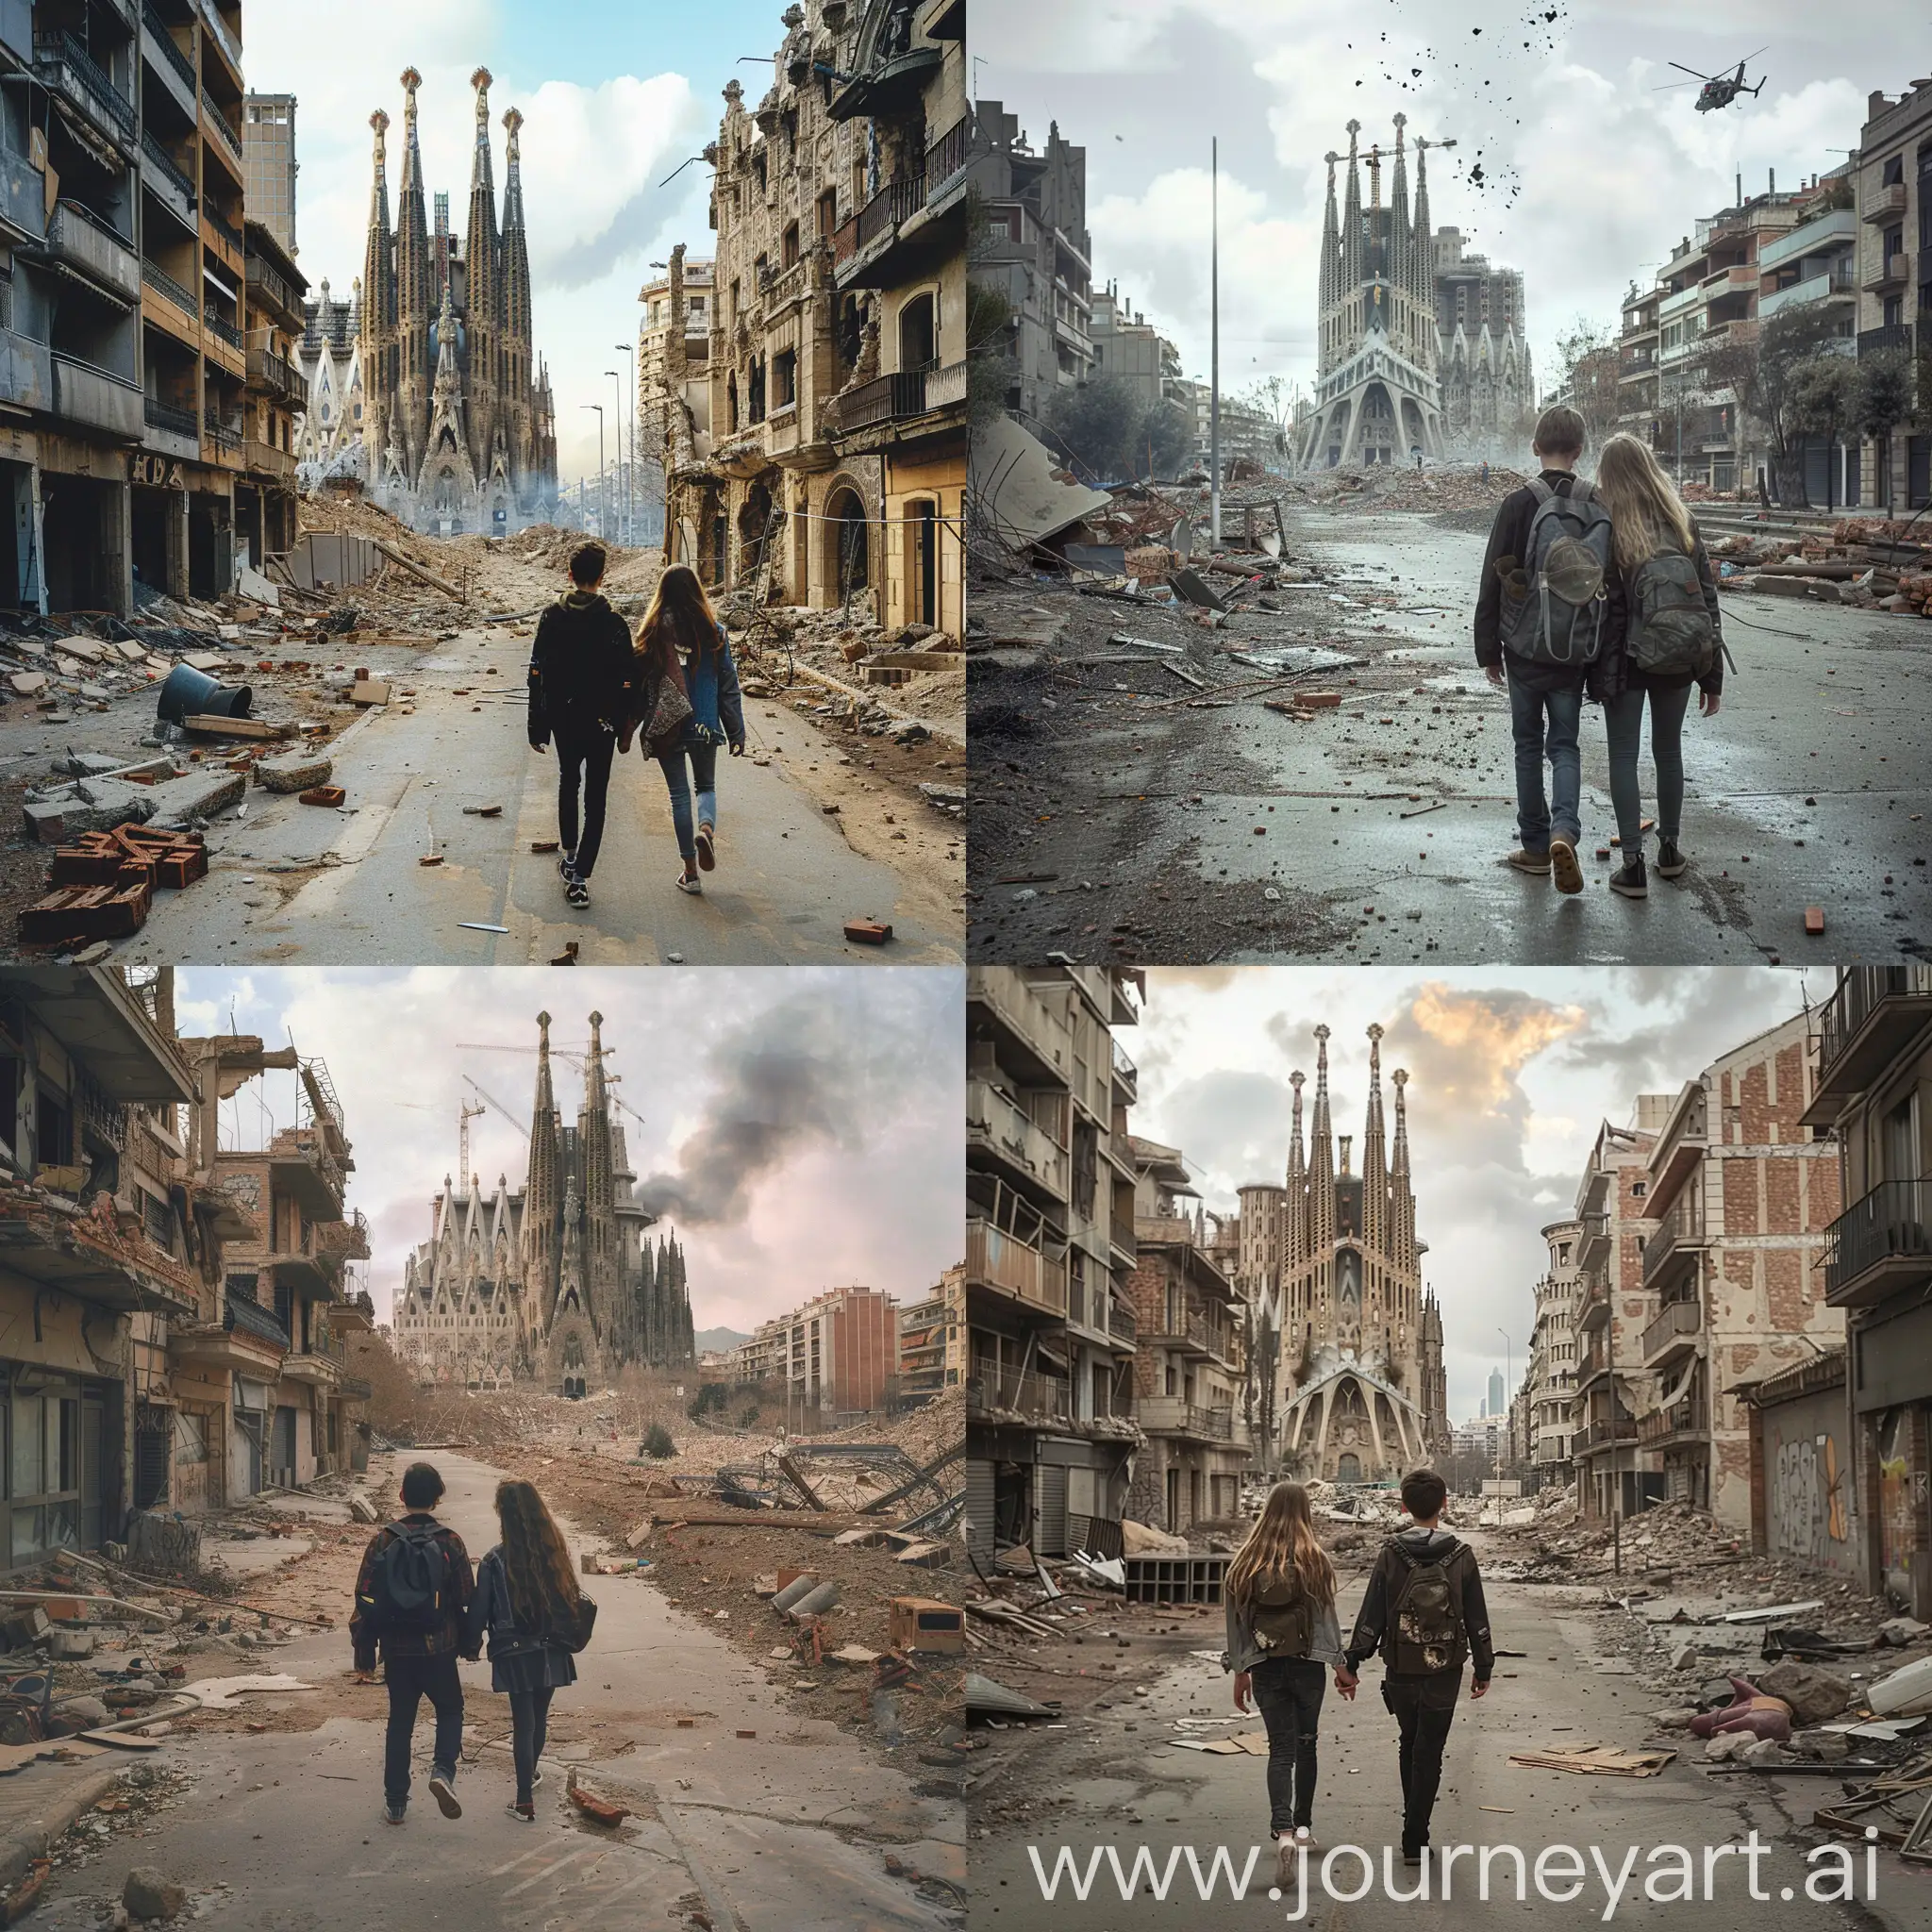 Un paisaje desolado tras la tercera guerra mundial, ciudad abandonada y restos de destrucción, una pareja de adolescentes caminan por una calle, al fondo se puede ver la Sagrada Família de Barcelona medio en ruinas